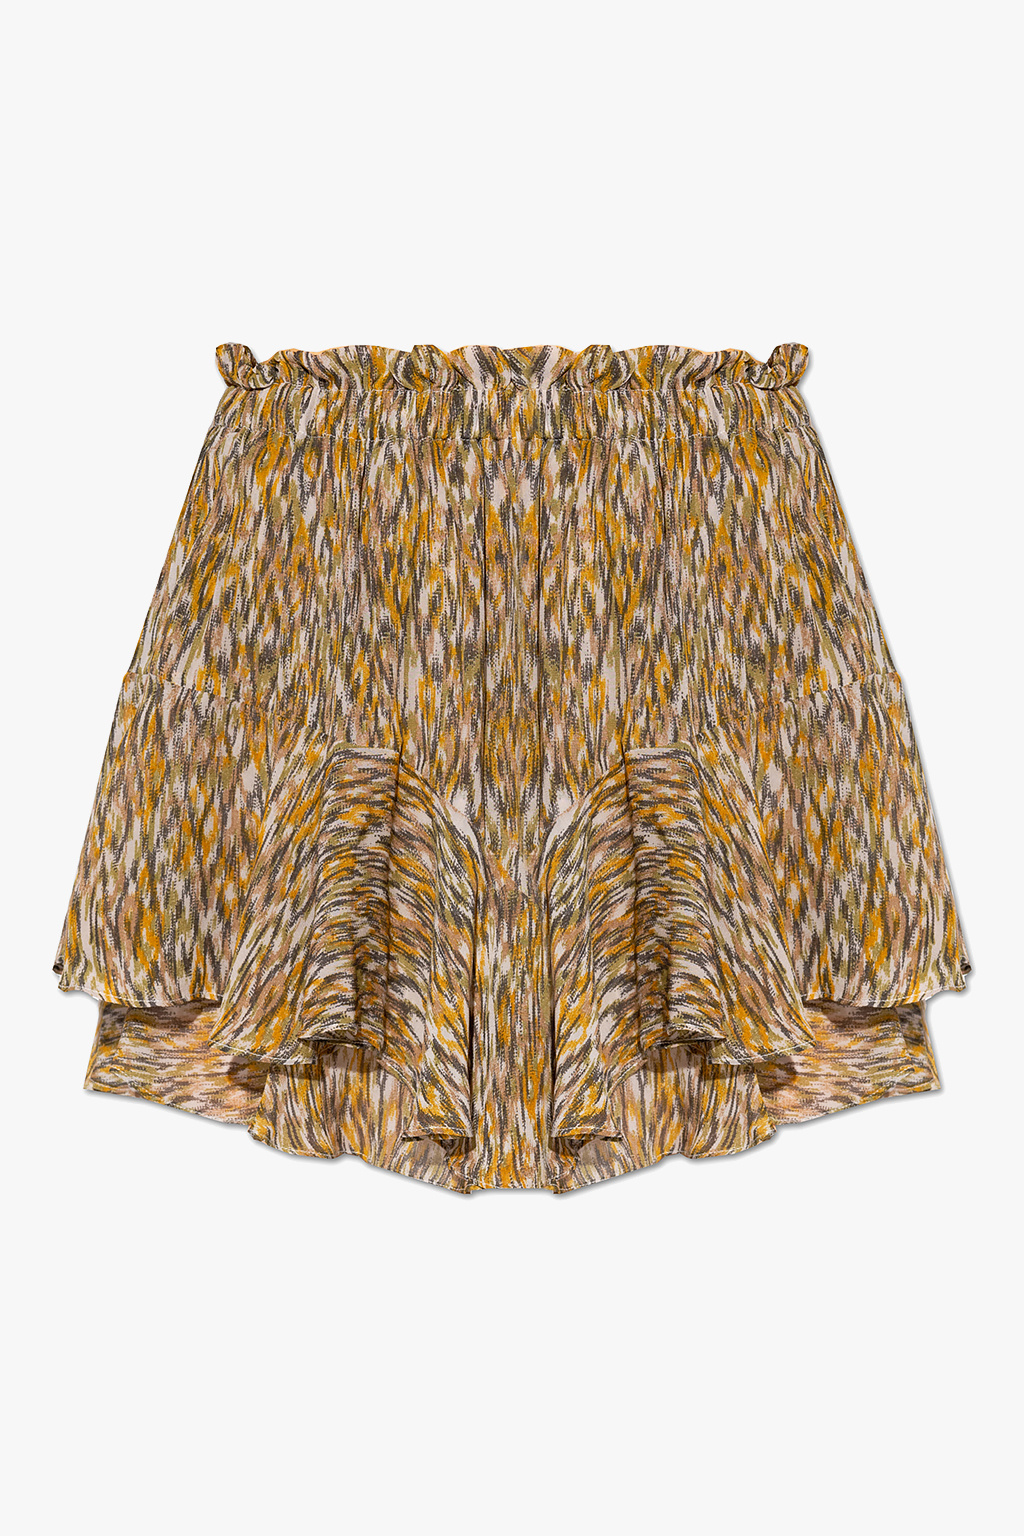 Marant Etoile ‘Sornel’ patterned Velvet shorts